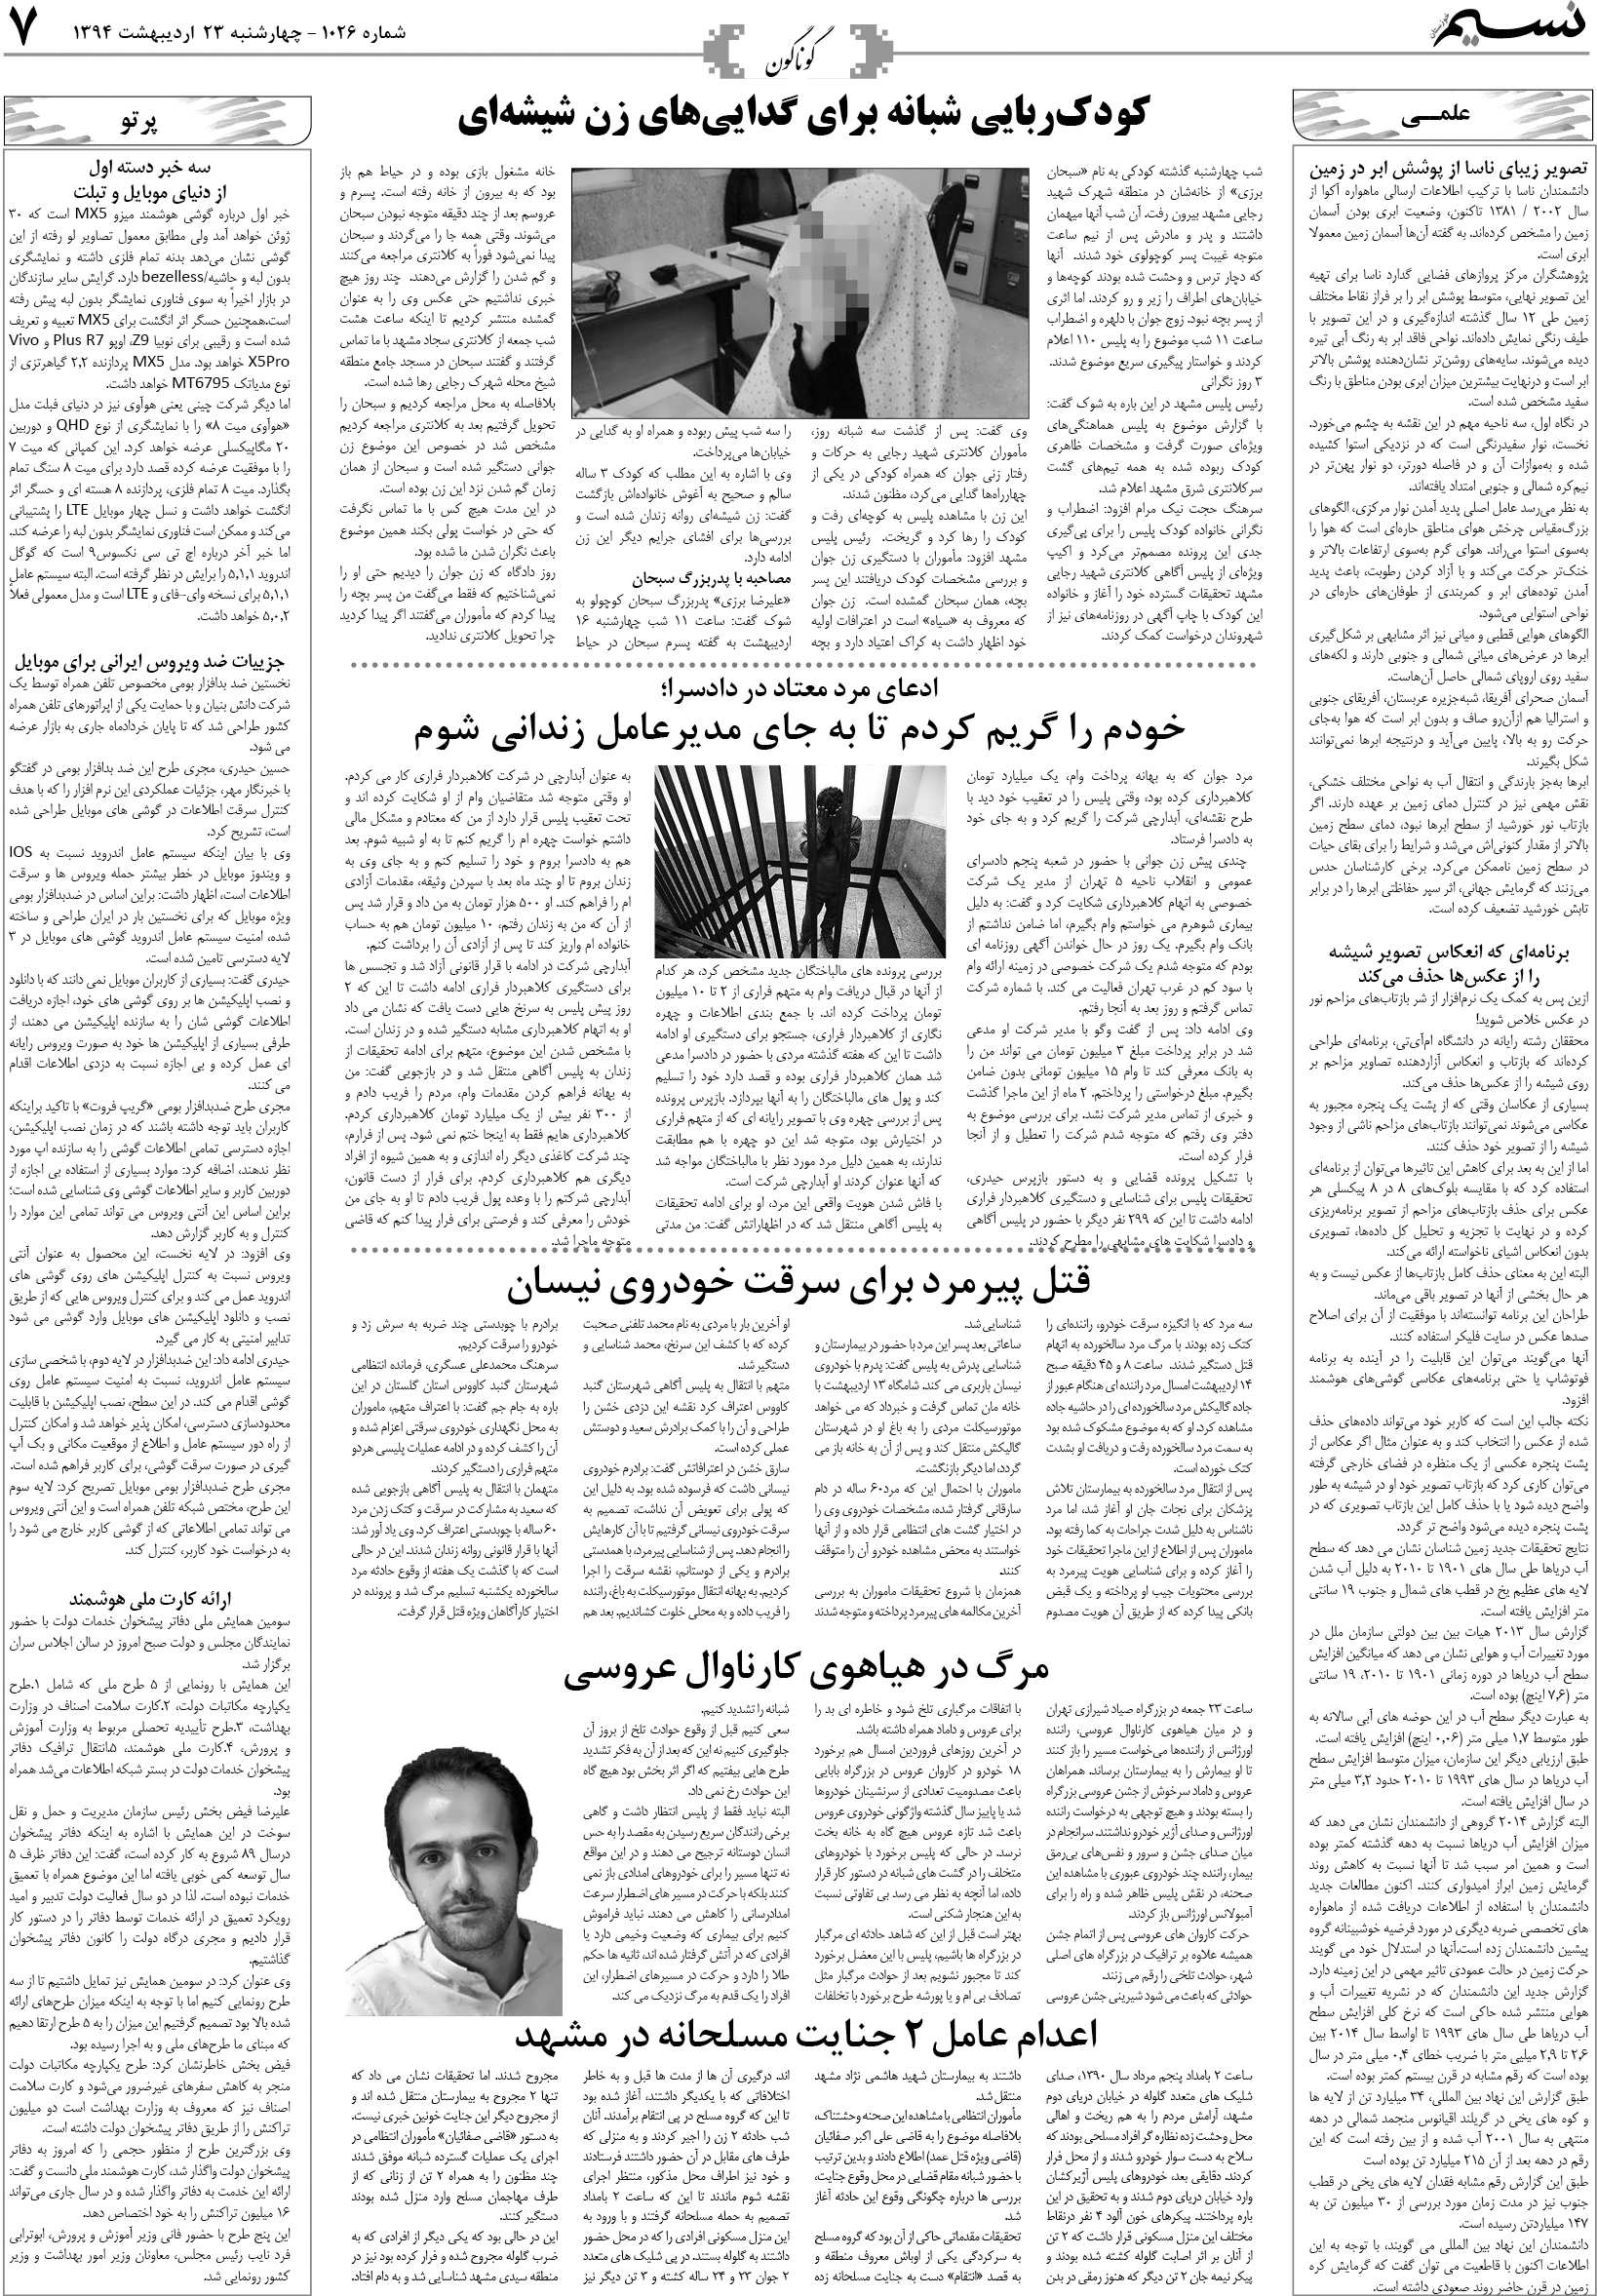 صفحه گوناگون روزنامه نسیم شماره 1026